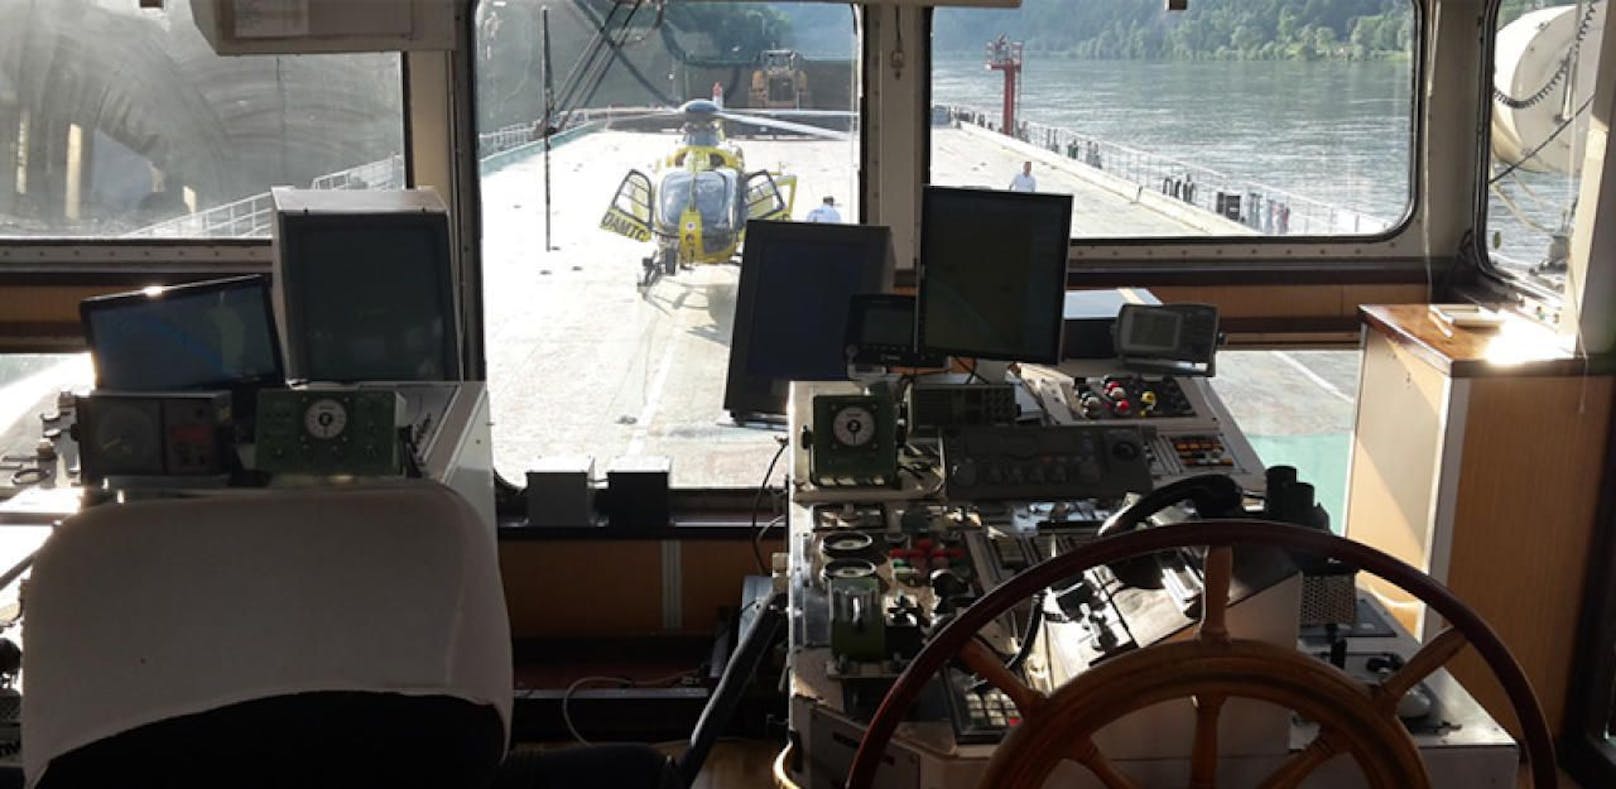 Spektakulär: Heli landete auf Donau-Frachtschiff